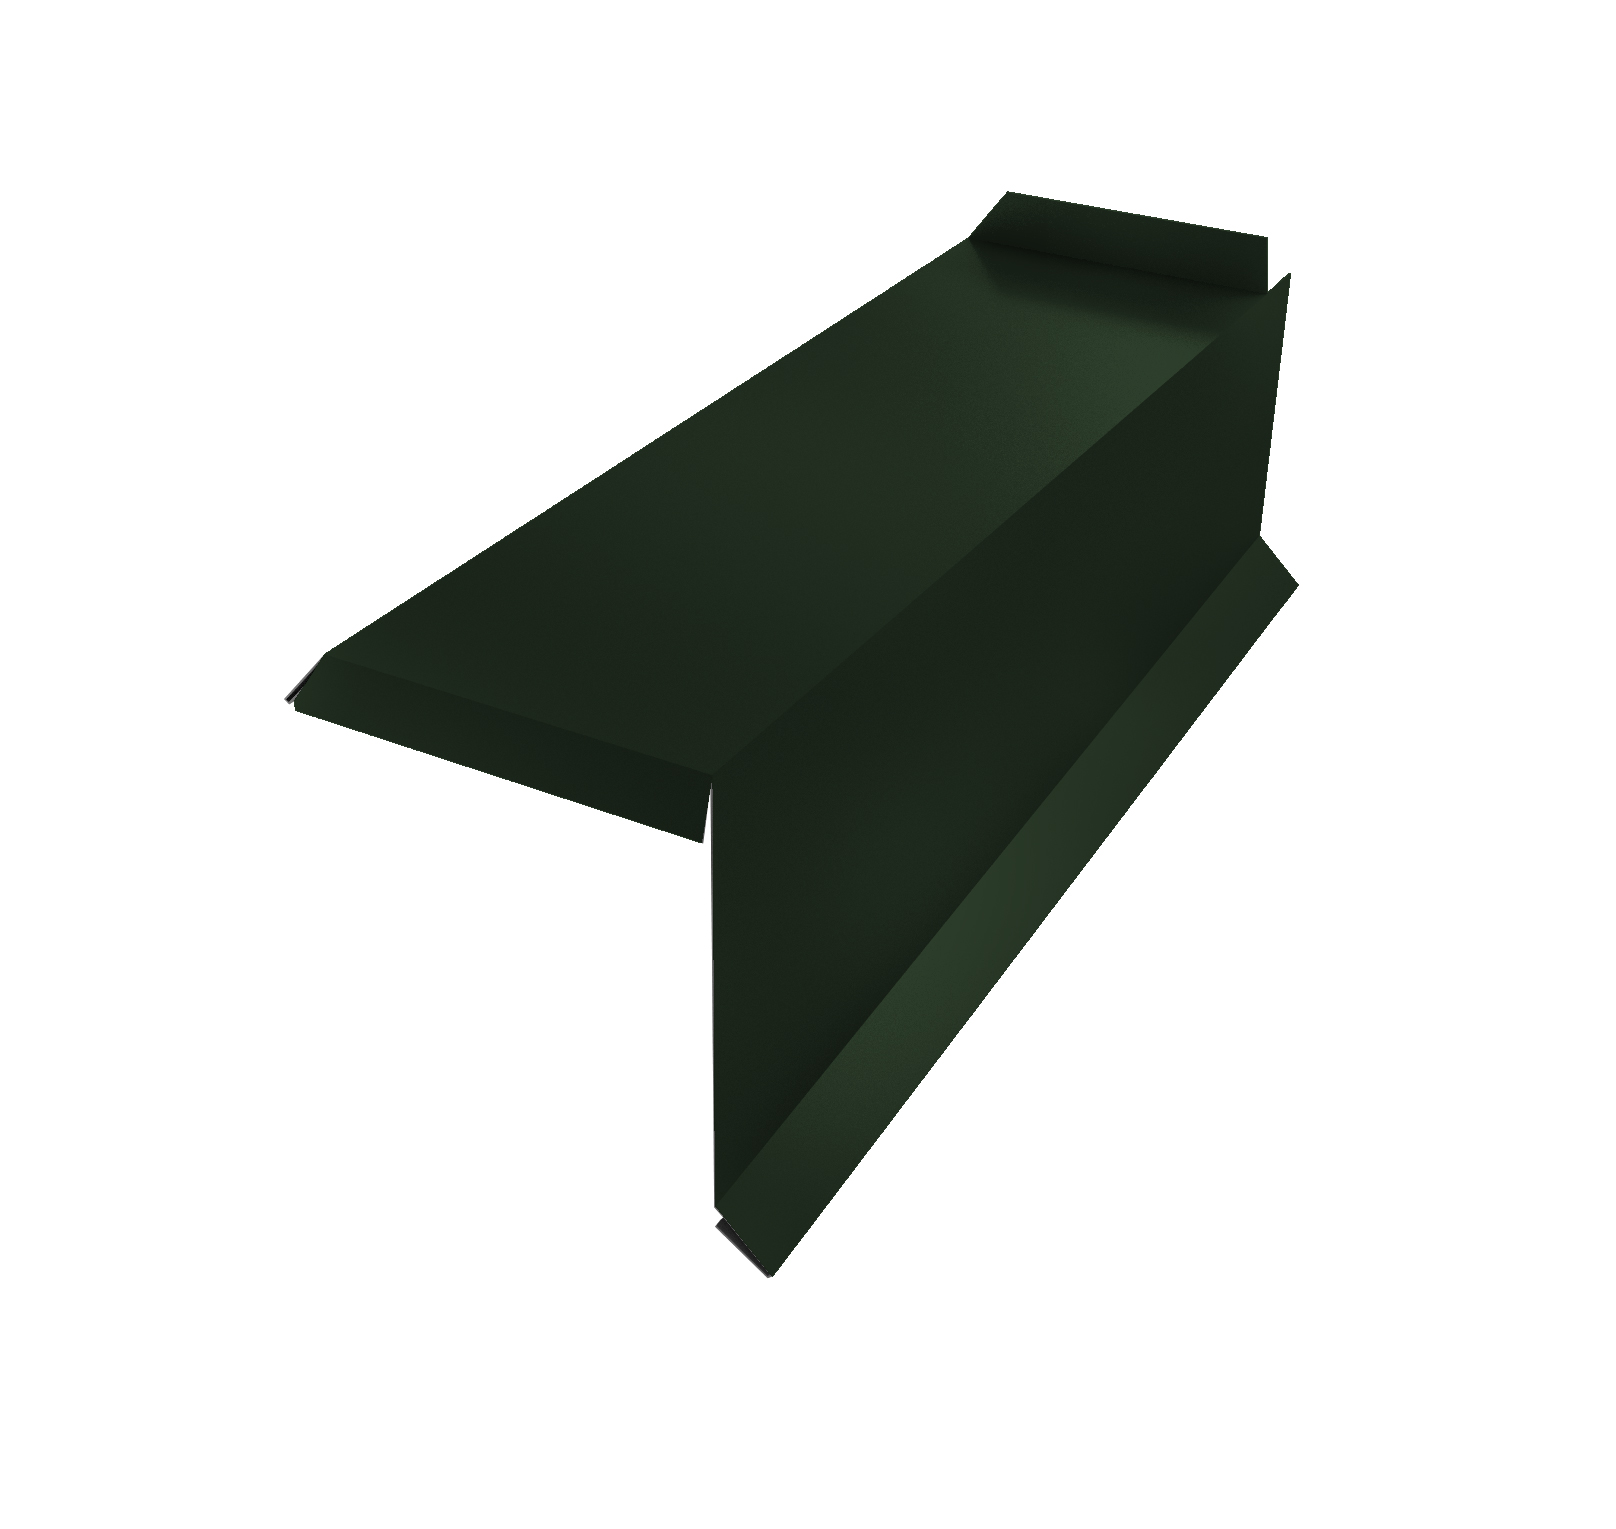 Планка торцевая сегментная 30мм Правая 0,5 GreenCoat Pural BT, matt RR 11 темно-зеленый (RAL 6020 хромовая зелень)